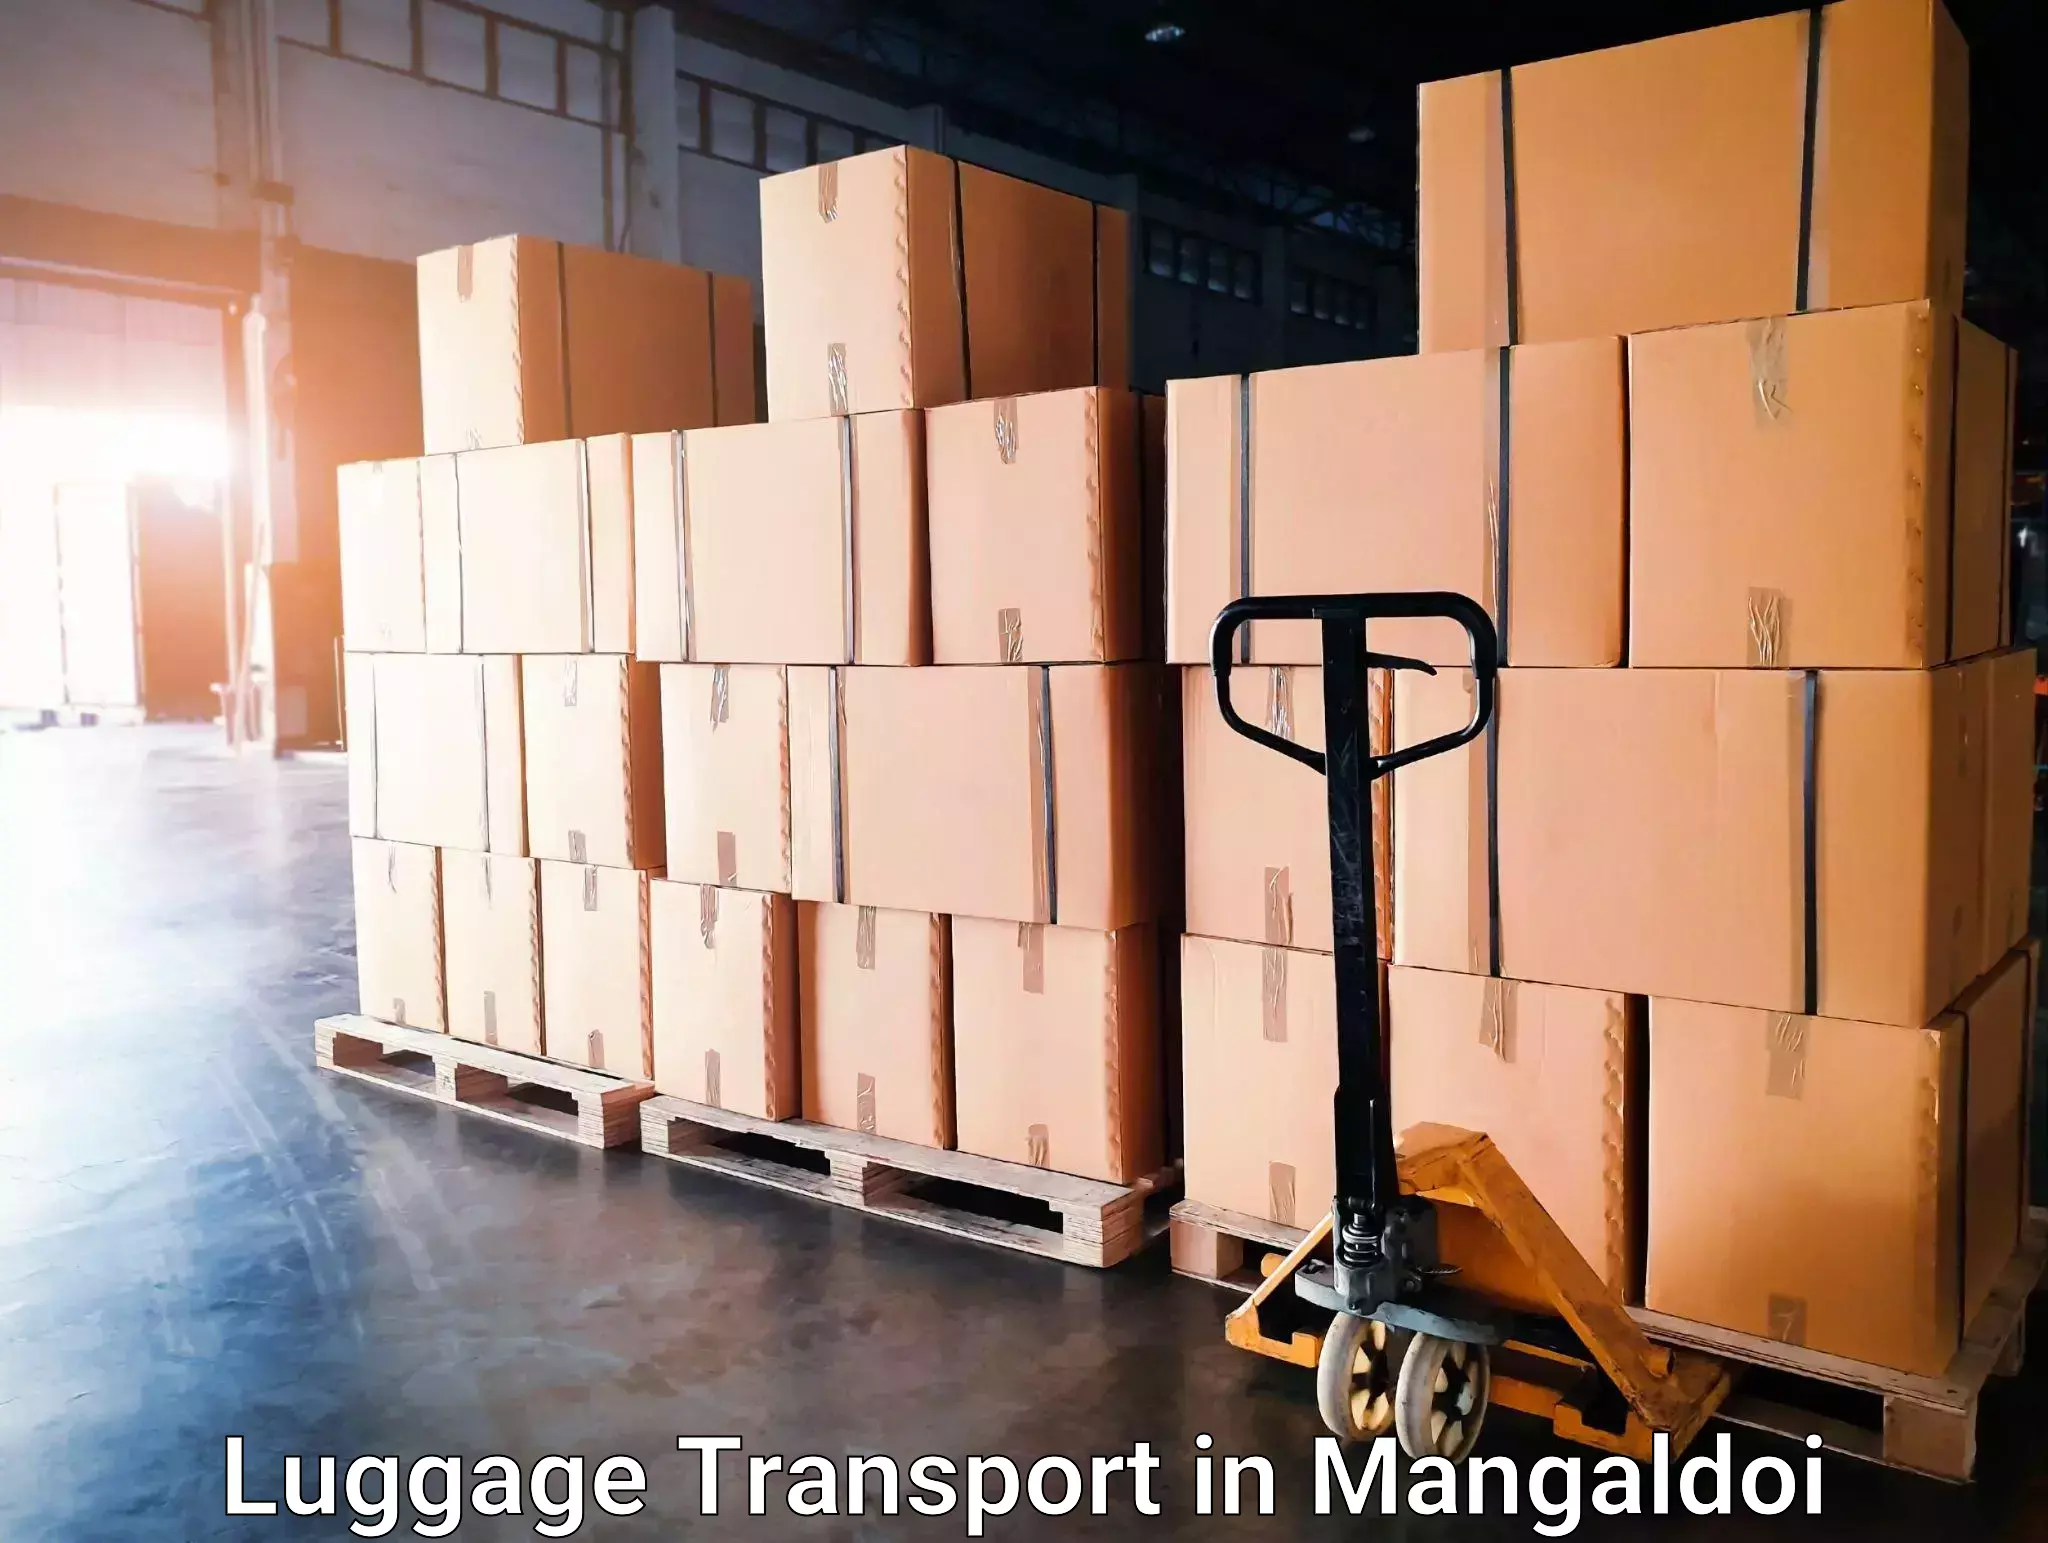 Baggage transport estimate in Mangaldoi